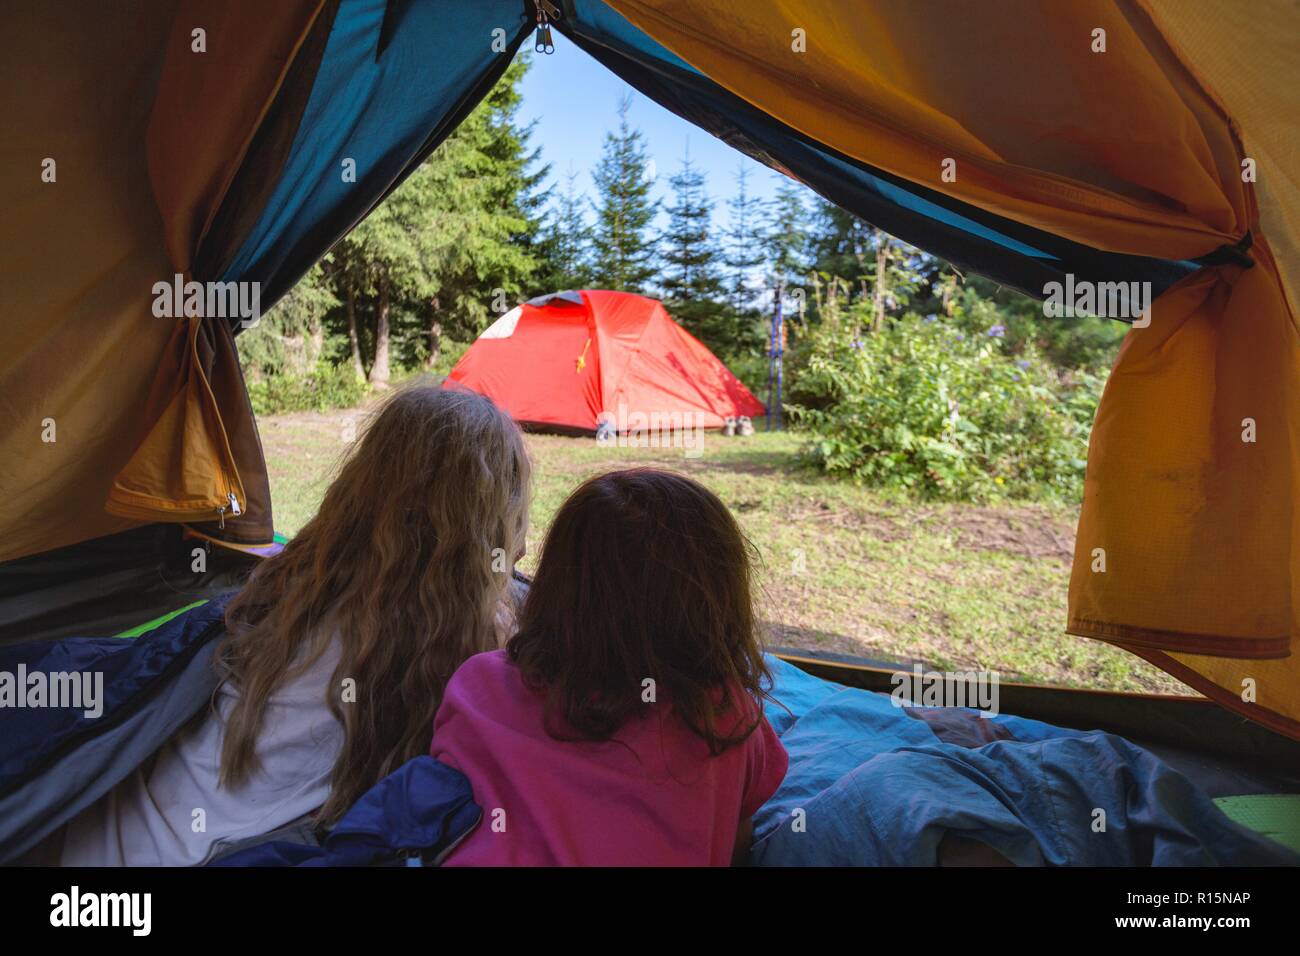 Wanderung und Camping leben. In den Bergen Wandern mit Kindern - lächelnde  Kinder in einem Zelt Stockfotografie - Alamy